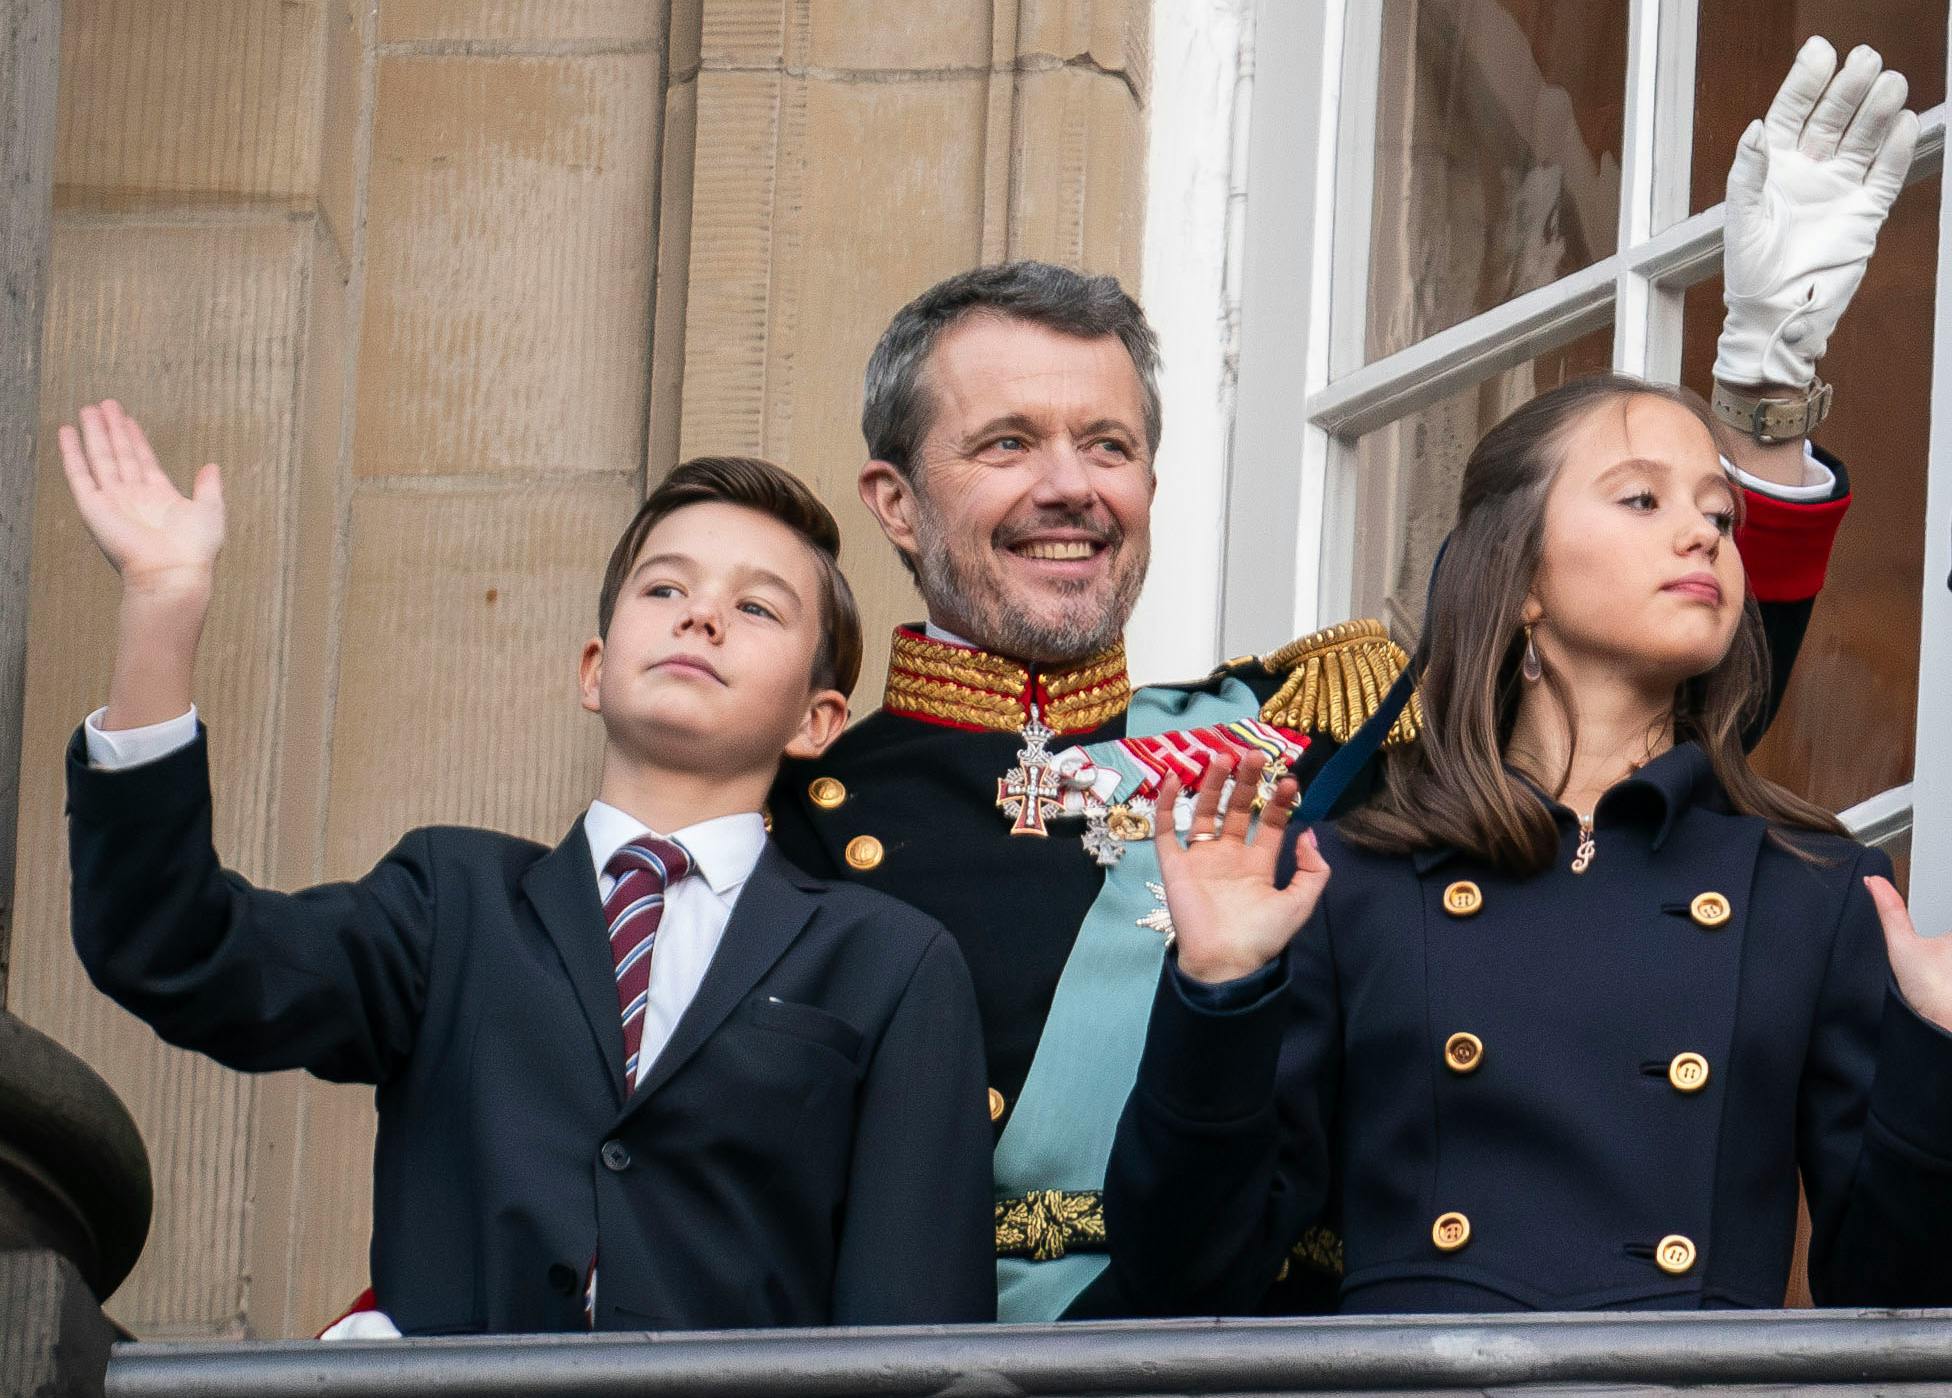 Kong Frederik med tvillingerne prins Vincent og prinsesse Josephine.